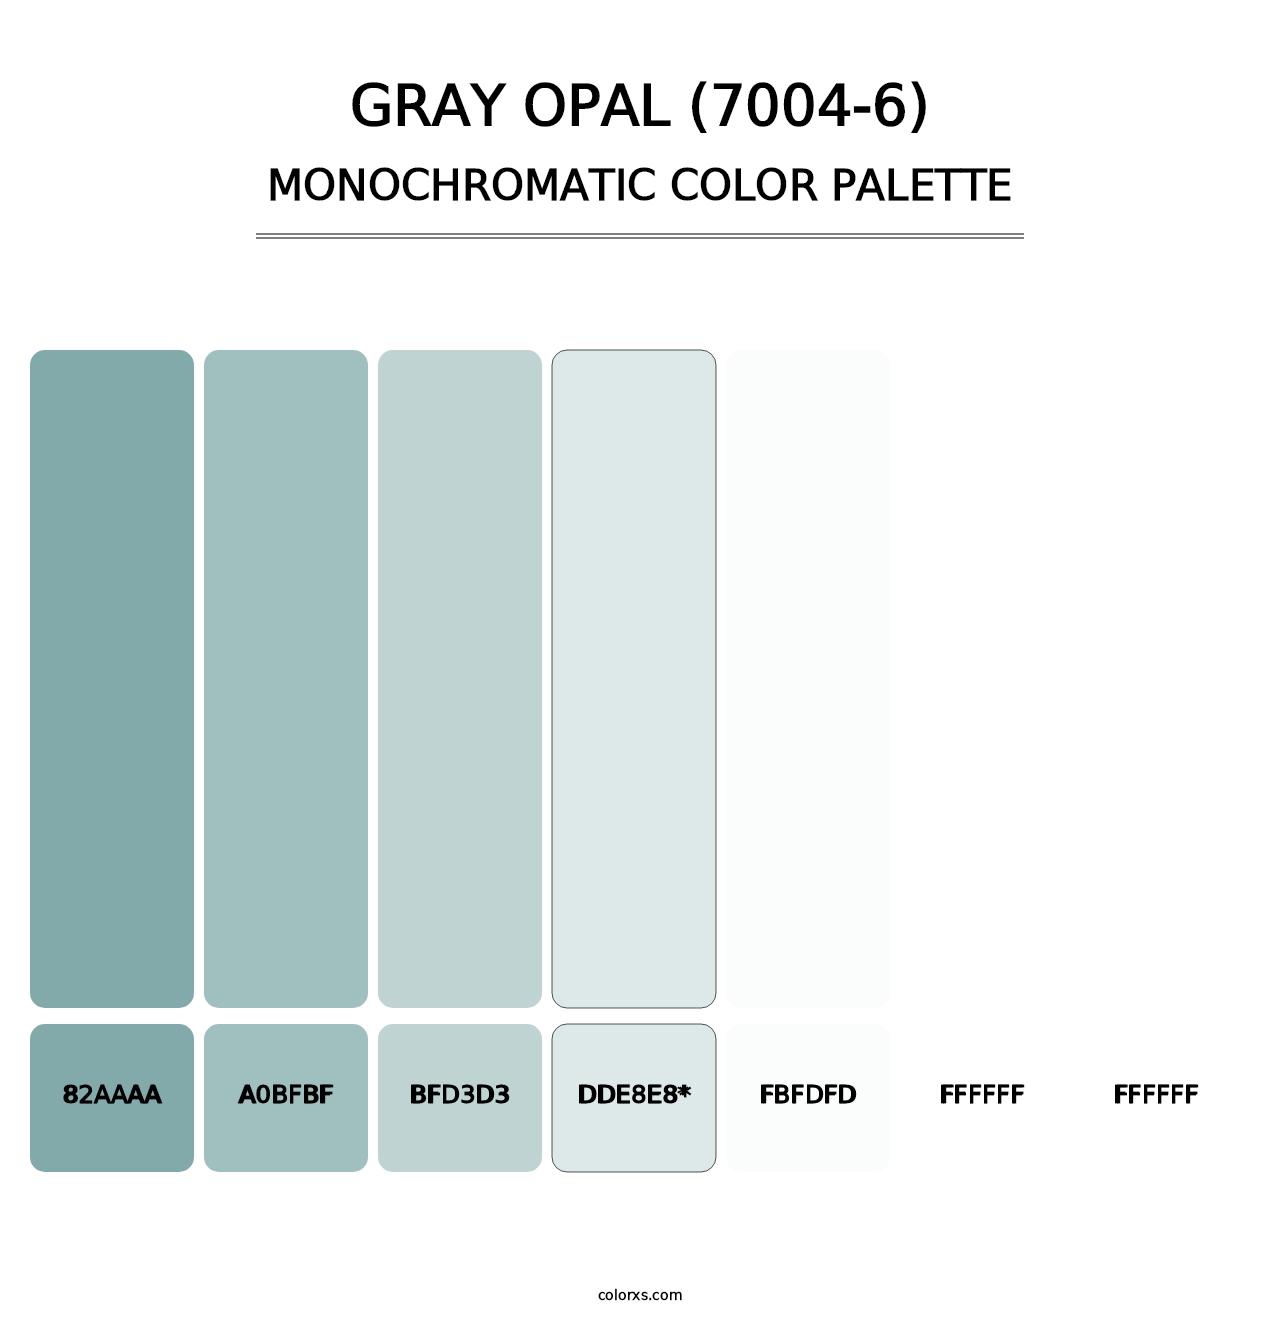 Gray Opal (7004-6) - Monochromatic Color Palette